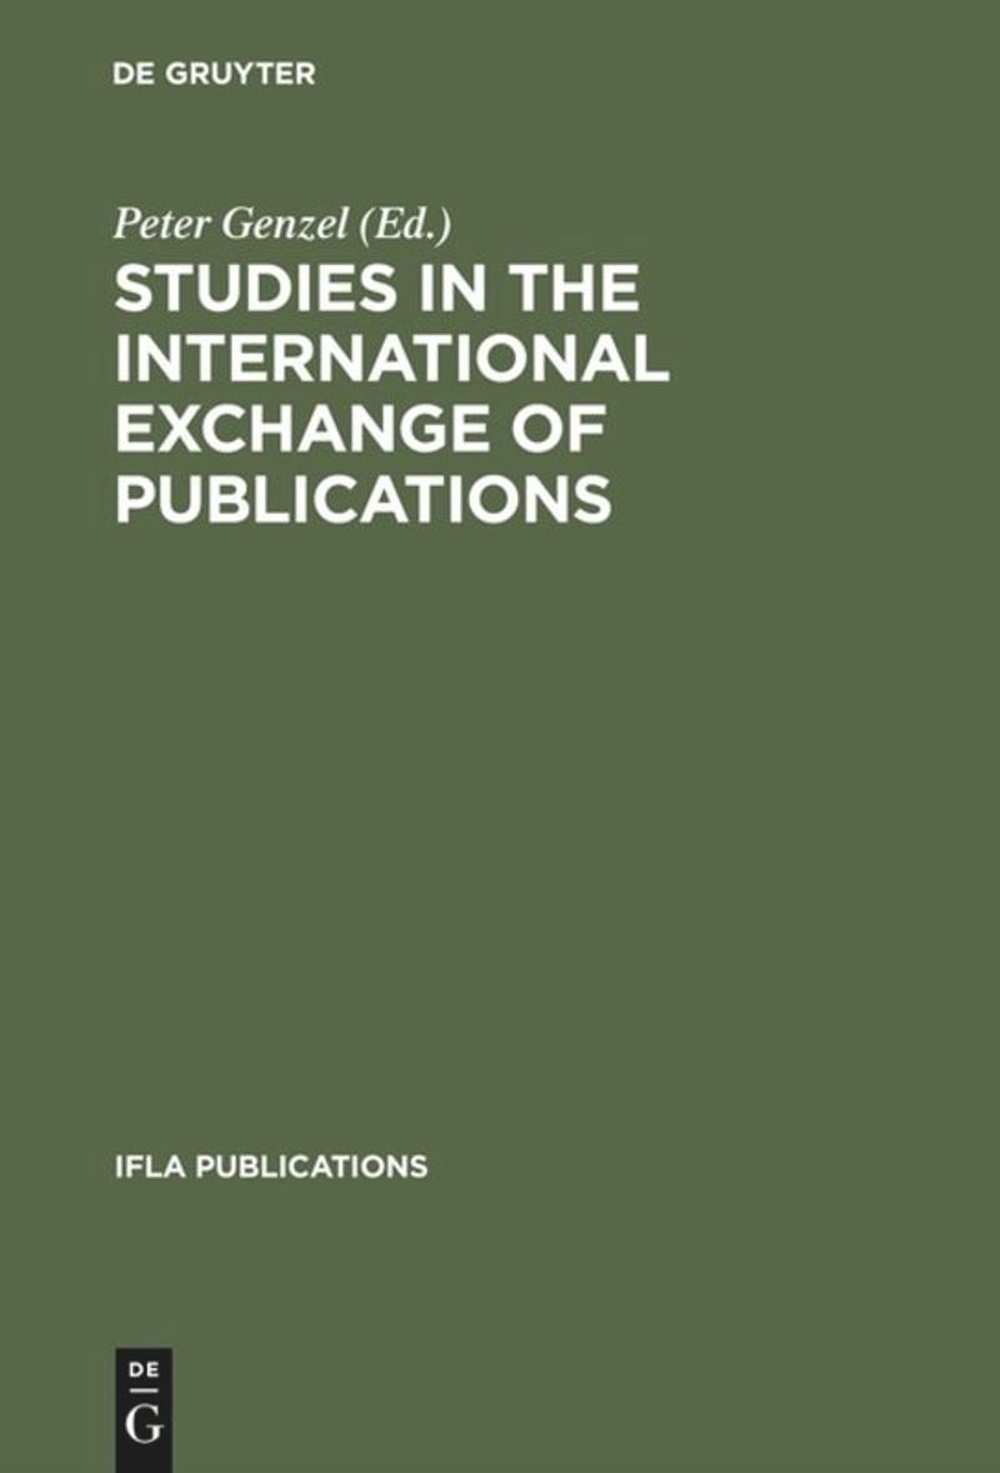 studies_in_the_international_exchange_of_publications_opti.jpg